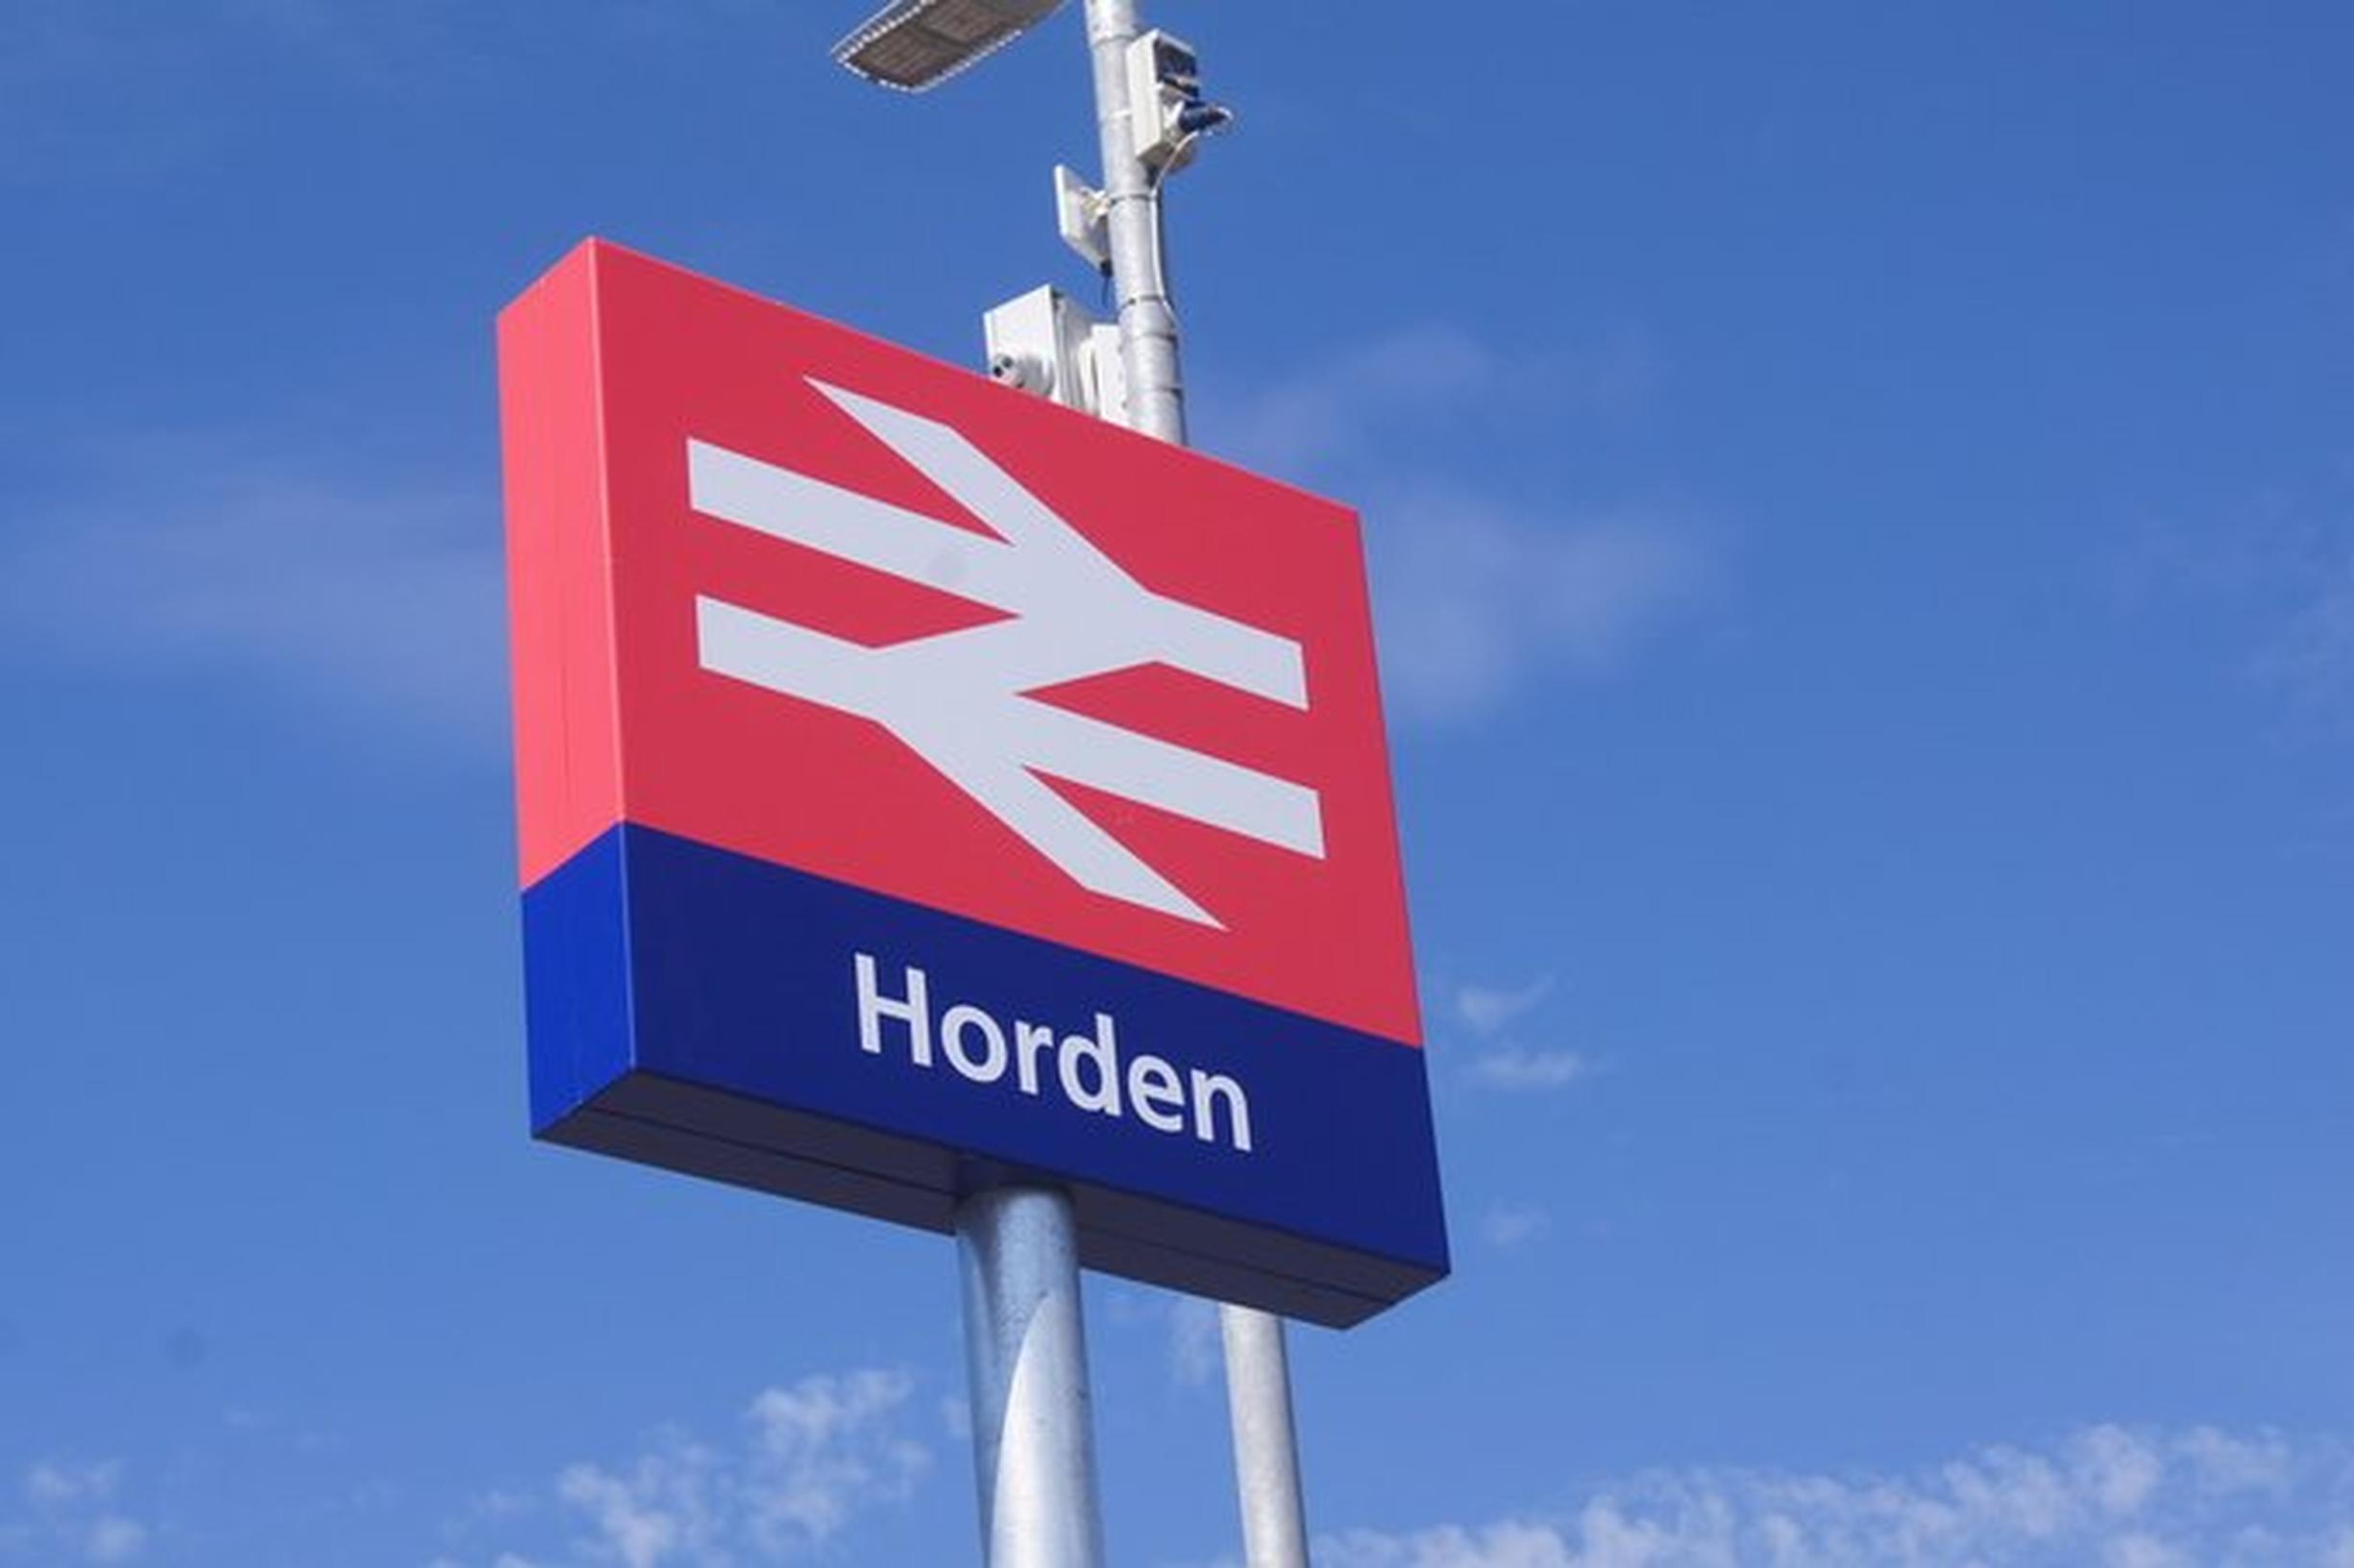 Horden station reopened on 29 June